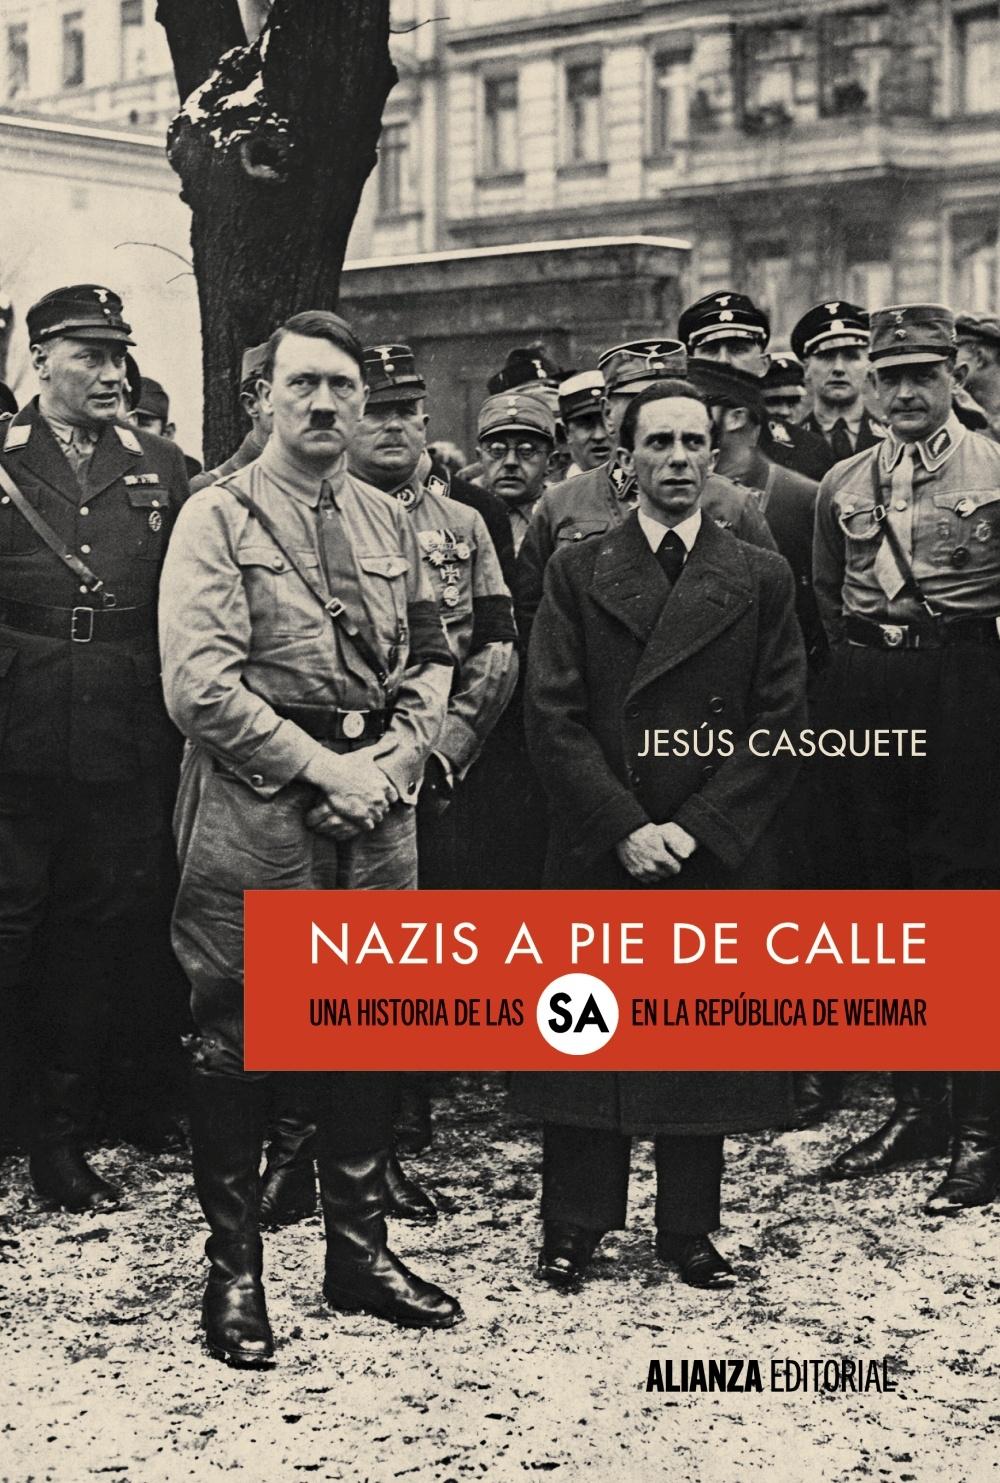 Nazis a Pie de Calle "Una Historia de las Sa en la República de Weimar"